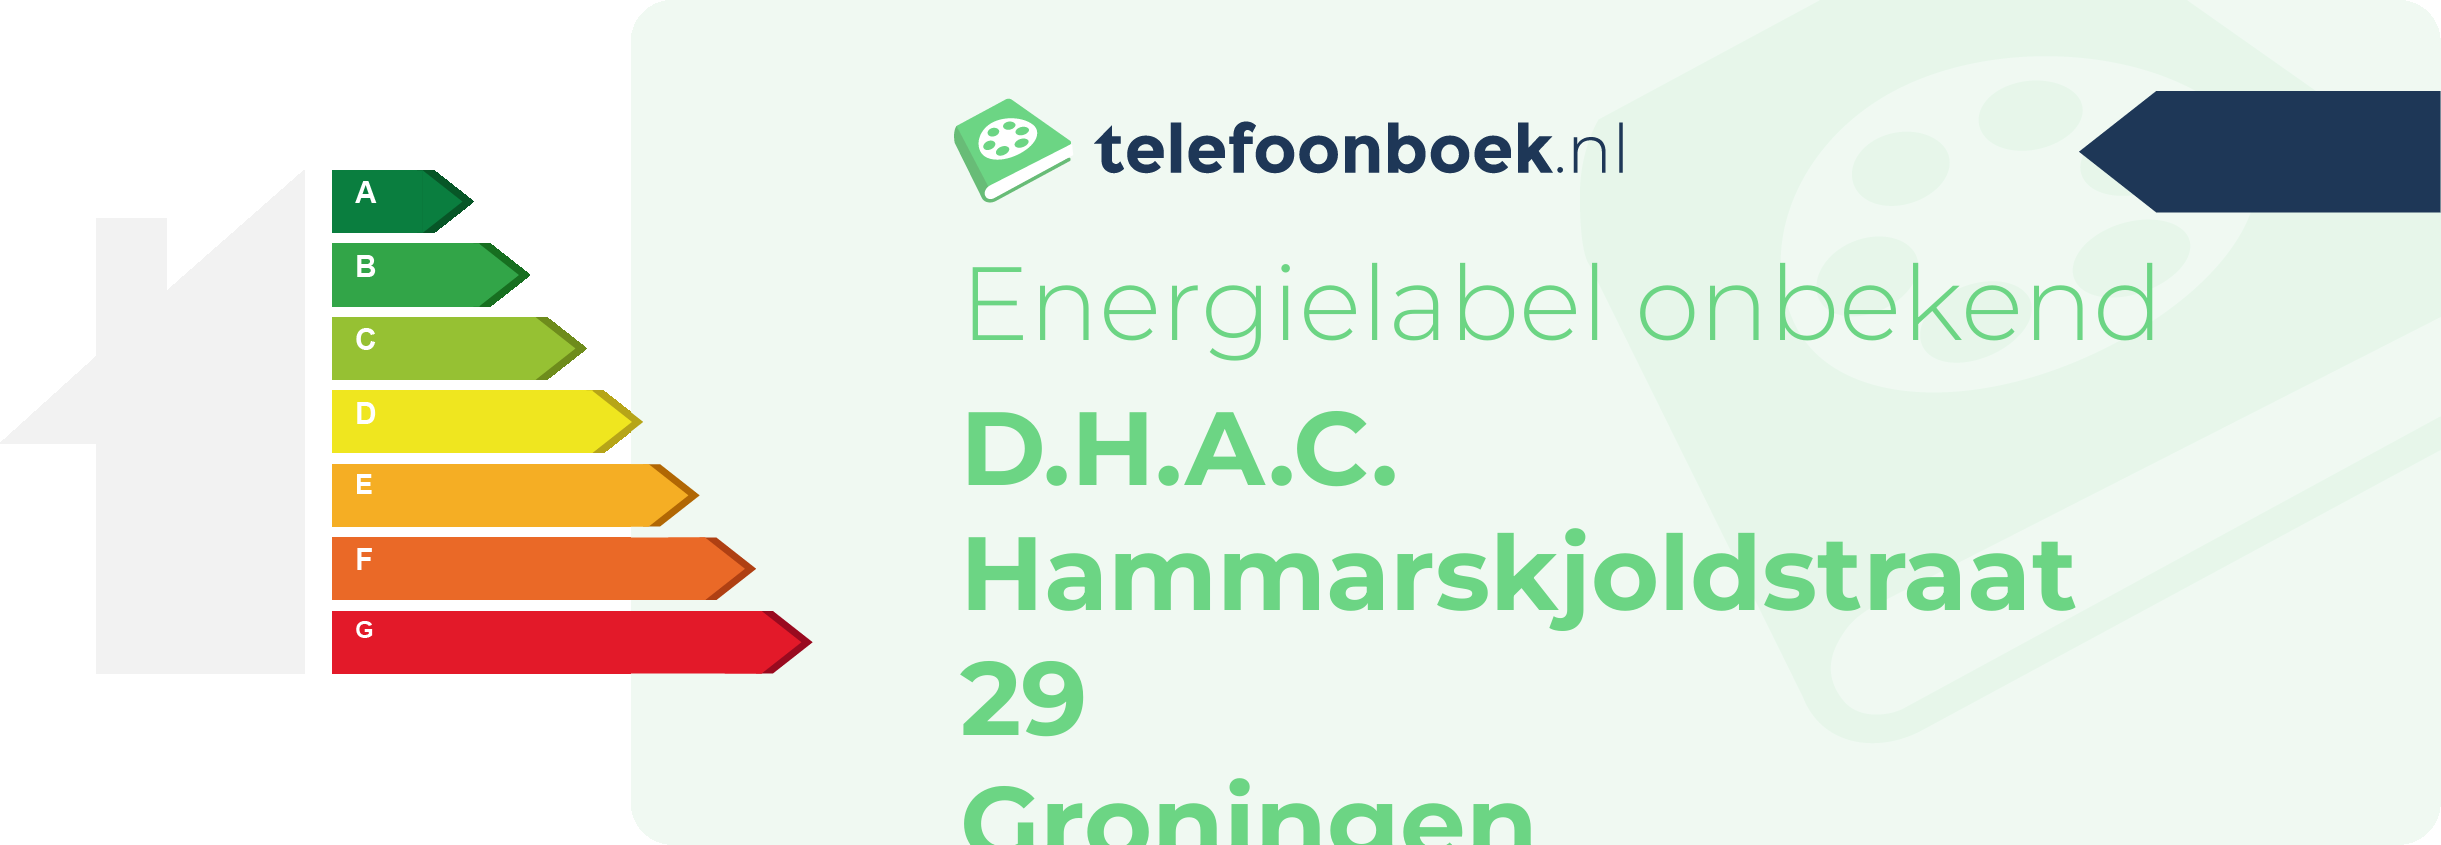 Energielabel D.H.A.C. Hammarskjoldstraat 29 Groningen